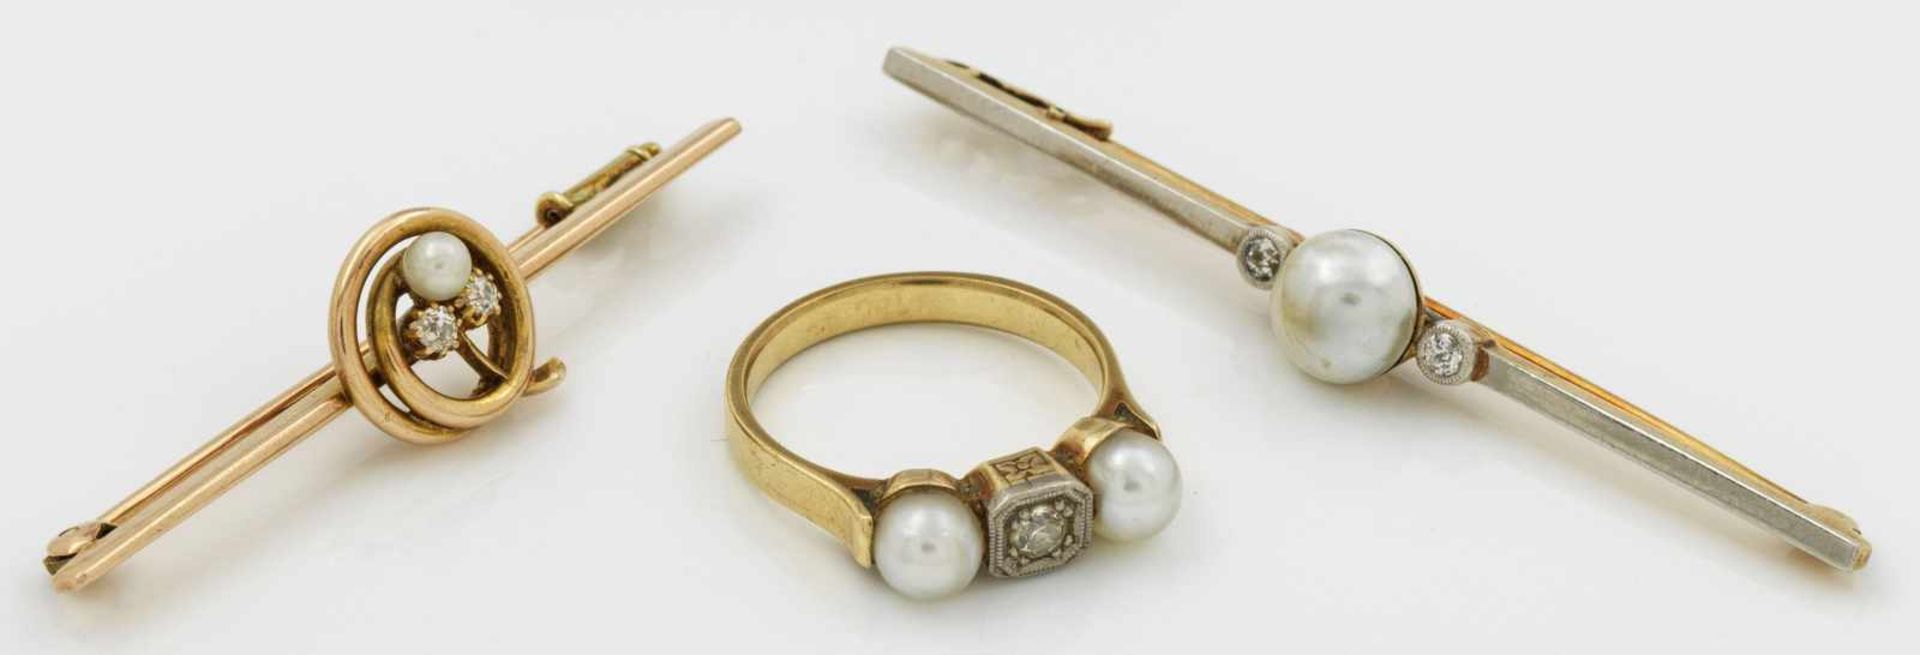 Jugendstil-Ring mit zwei BroschenGelbgold, gest. 585. Besetzt mit weißen Zuchtperlen bzw. kleiner